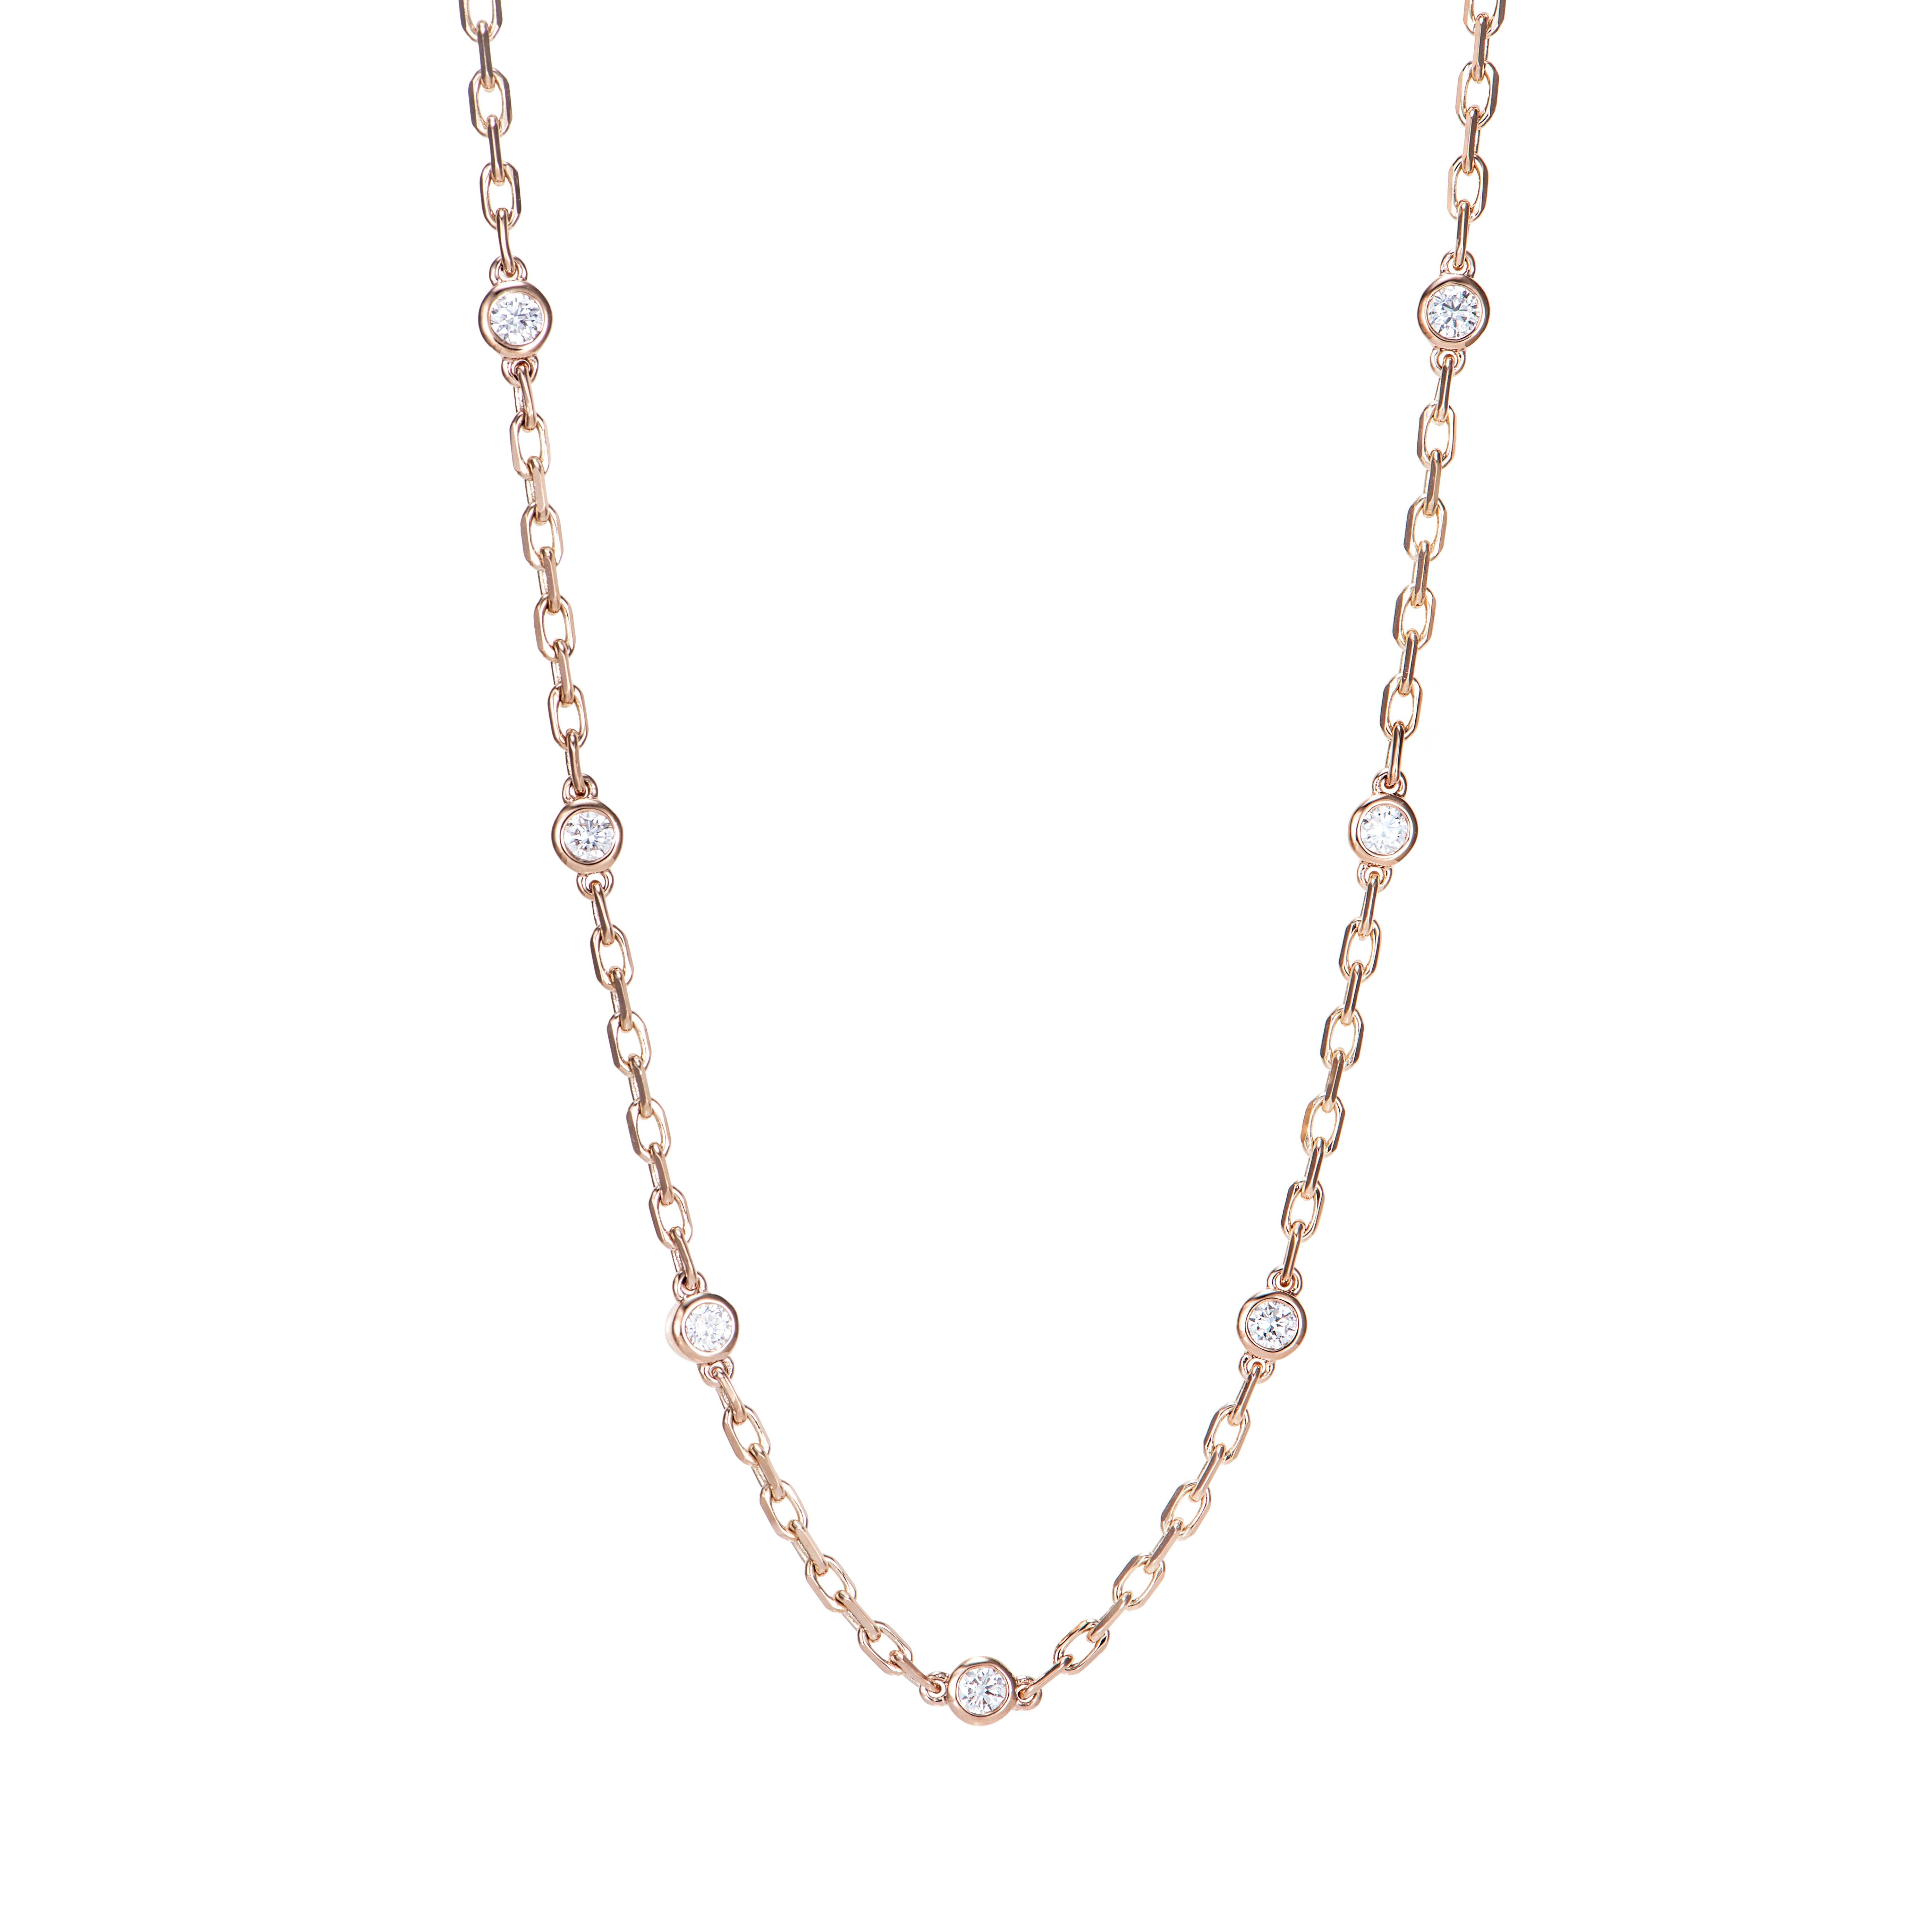 Un élégant collier apportera la touche finale à votre tenue. Ce collier est en or rose et présente un aspect classique et élégant. 

Collier à chaîne de diamants en or rose 18 carats.

Diamant : 1,66 carat, taille de 2,80 mm, forme ronde, couleur G,